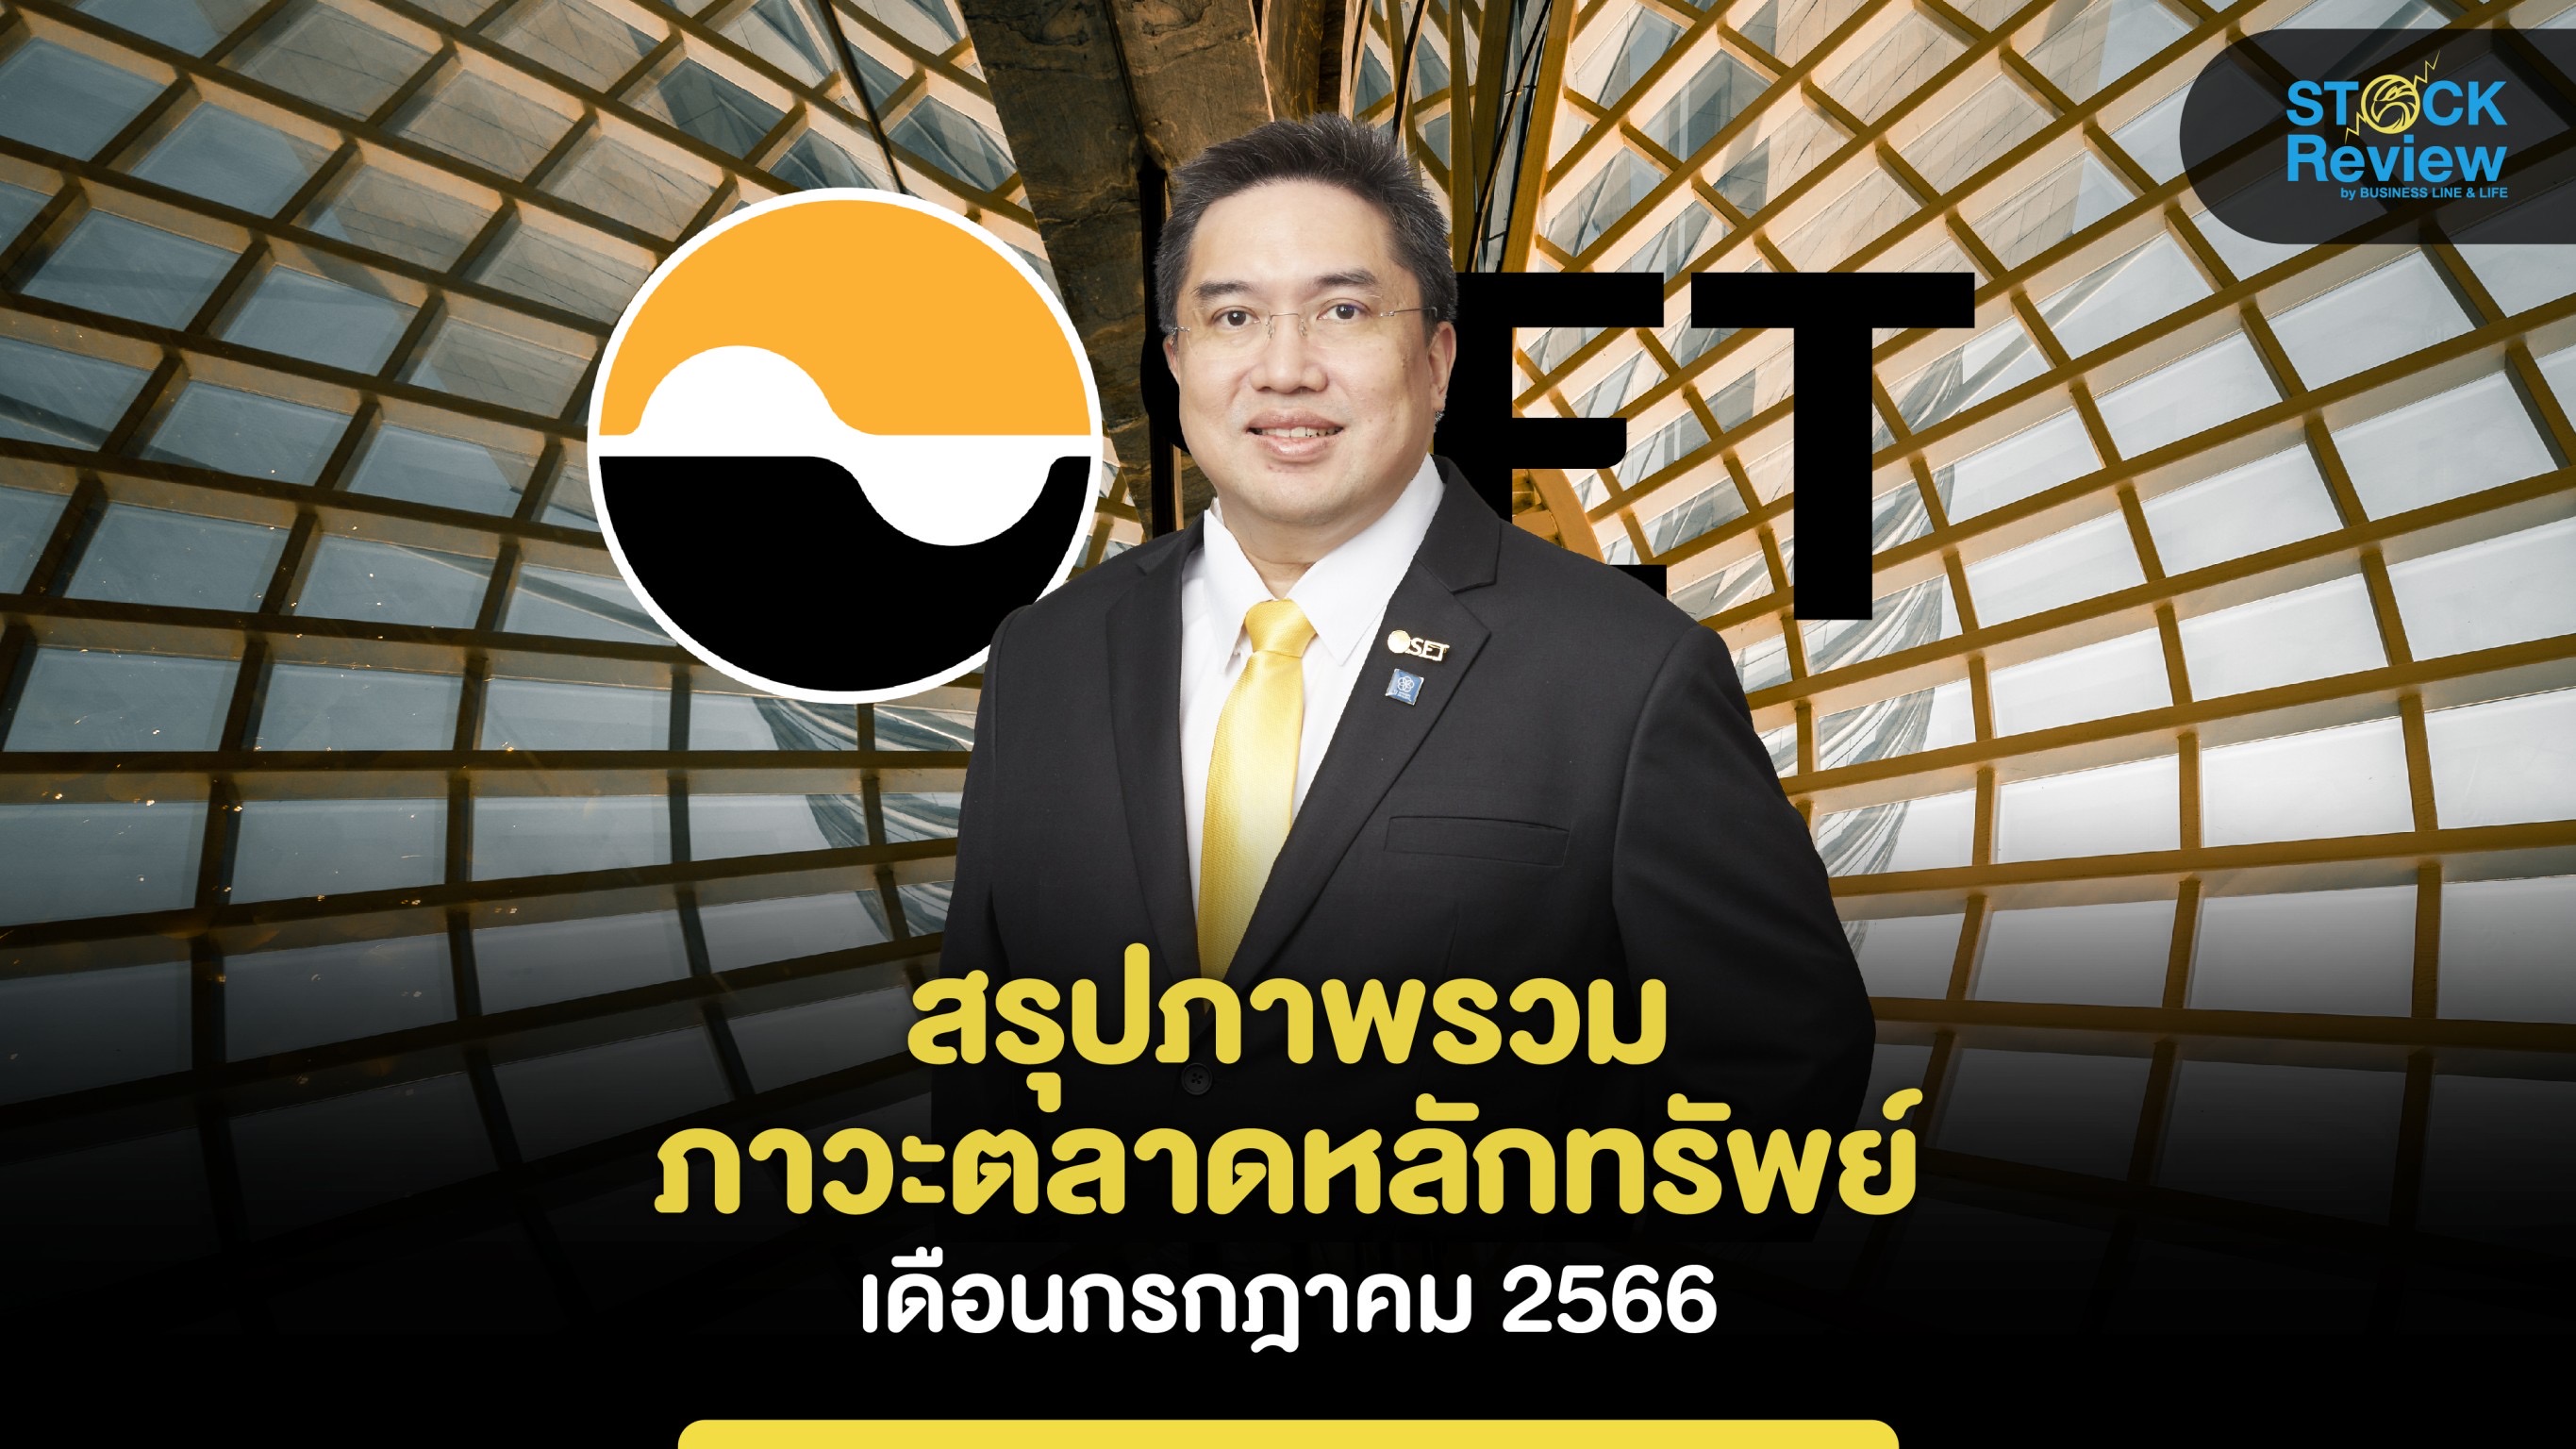 ตลท.เผยภาพรวมตลาดหุ้นไทยเดือนก.ค.2566 ดัชนีปรับเพิ่มขึ้น 3.5%